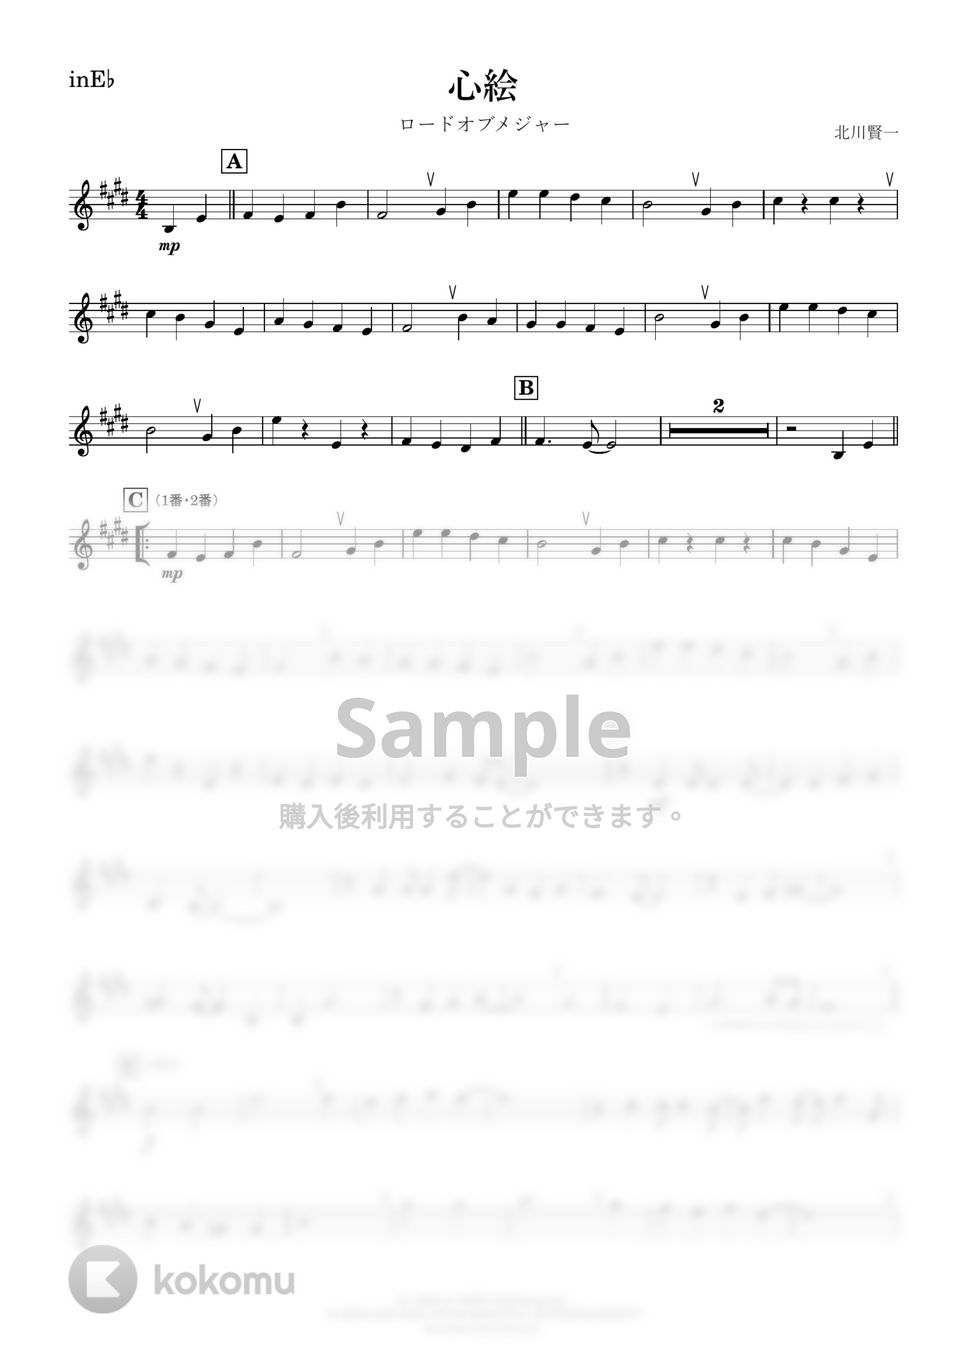 メジャー - 心絵 (E♭) by kanamusic